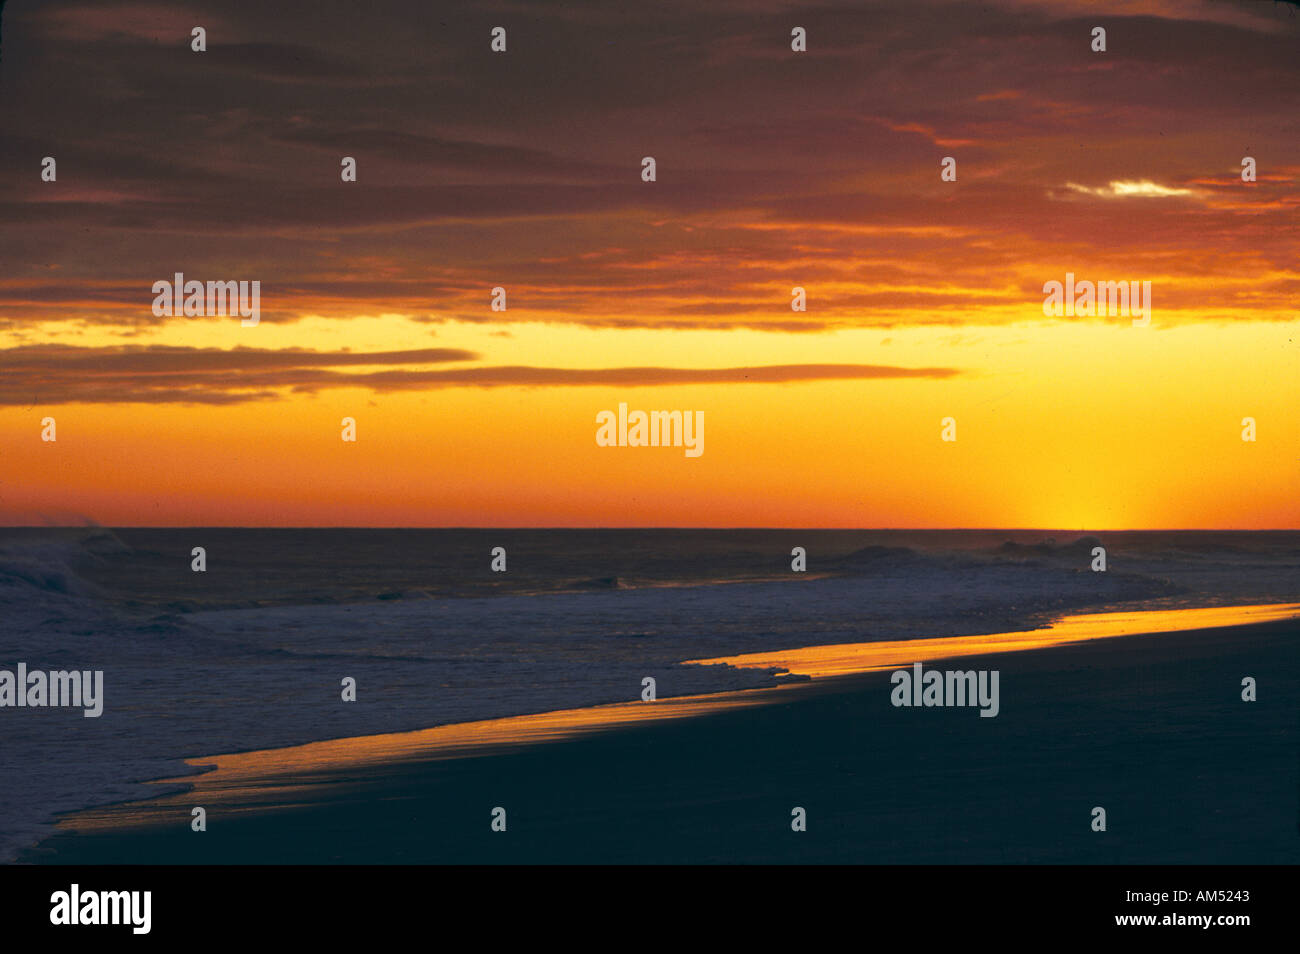 A golden sunset over a sandy ocean beach Stock Photo